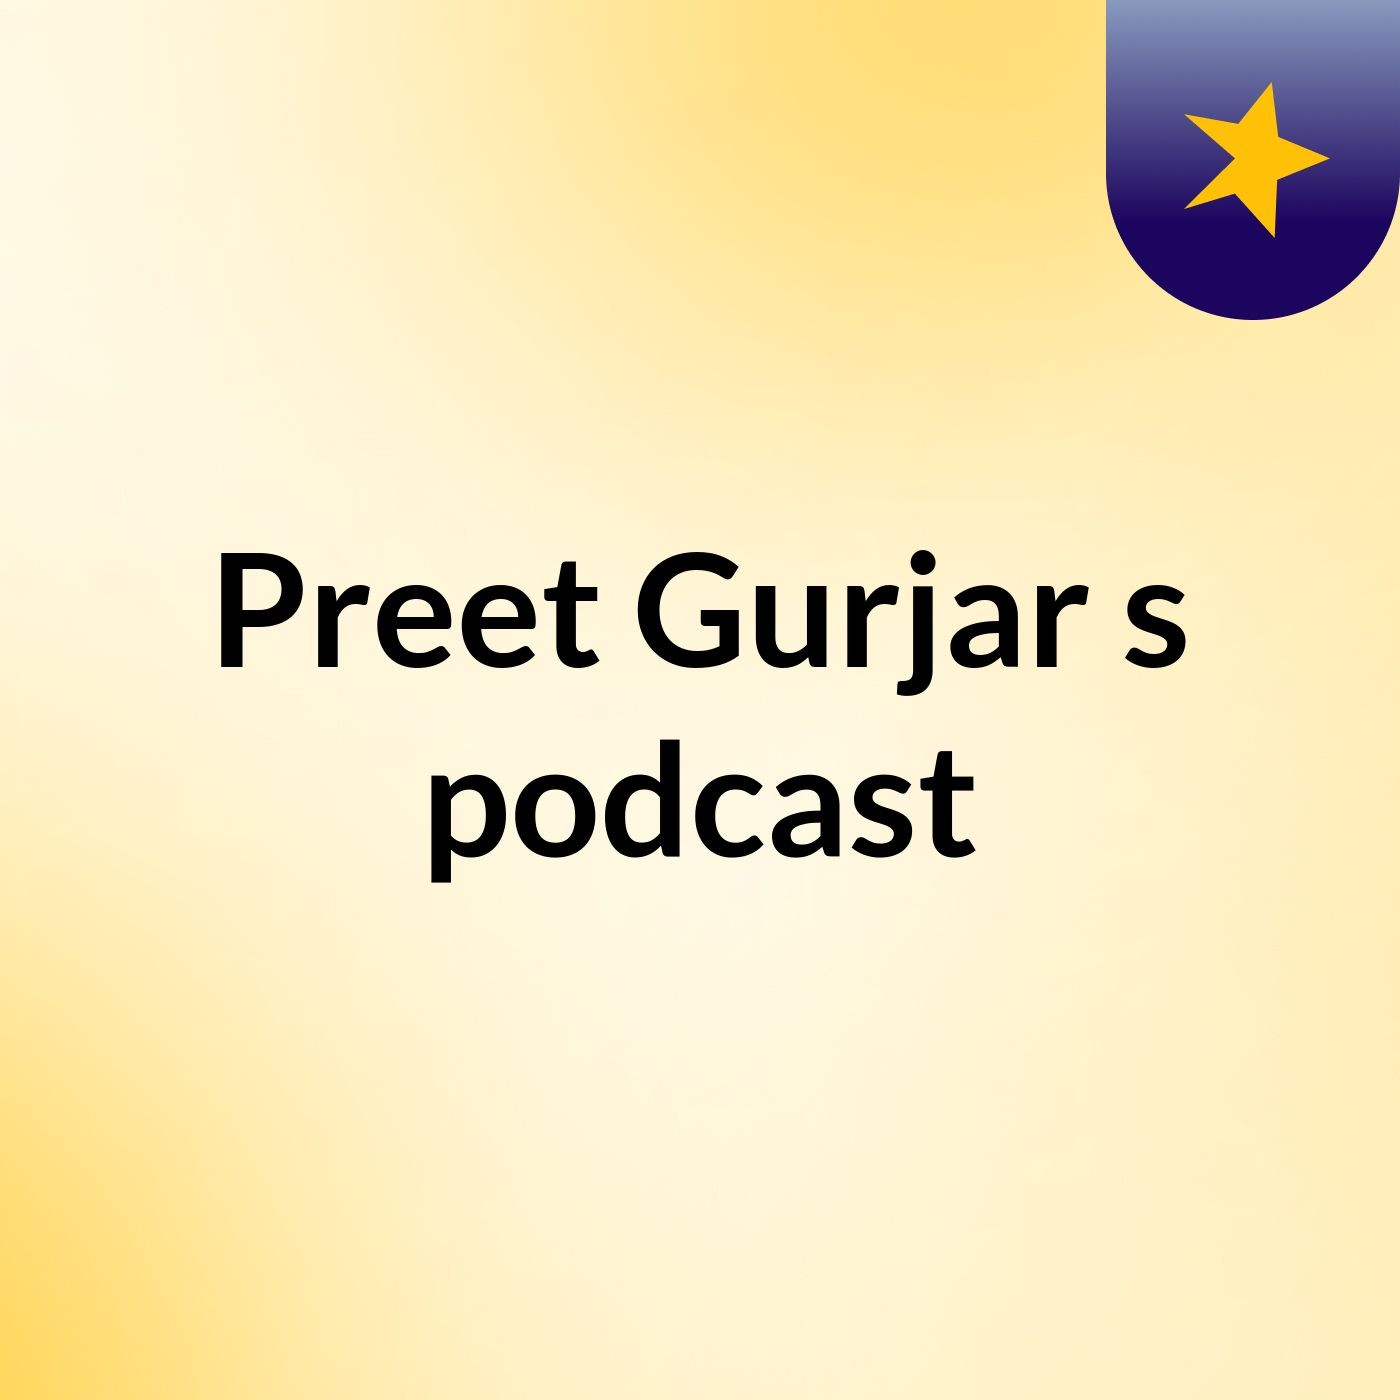 Preet Gurjar's podcast